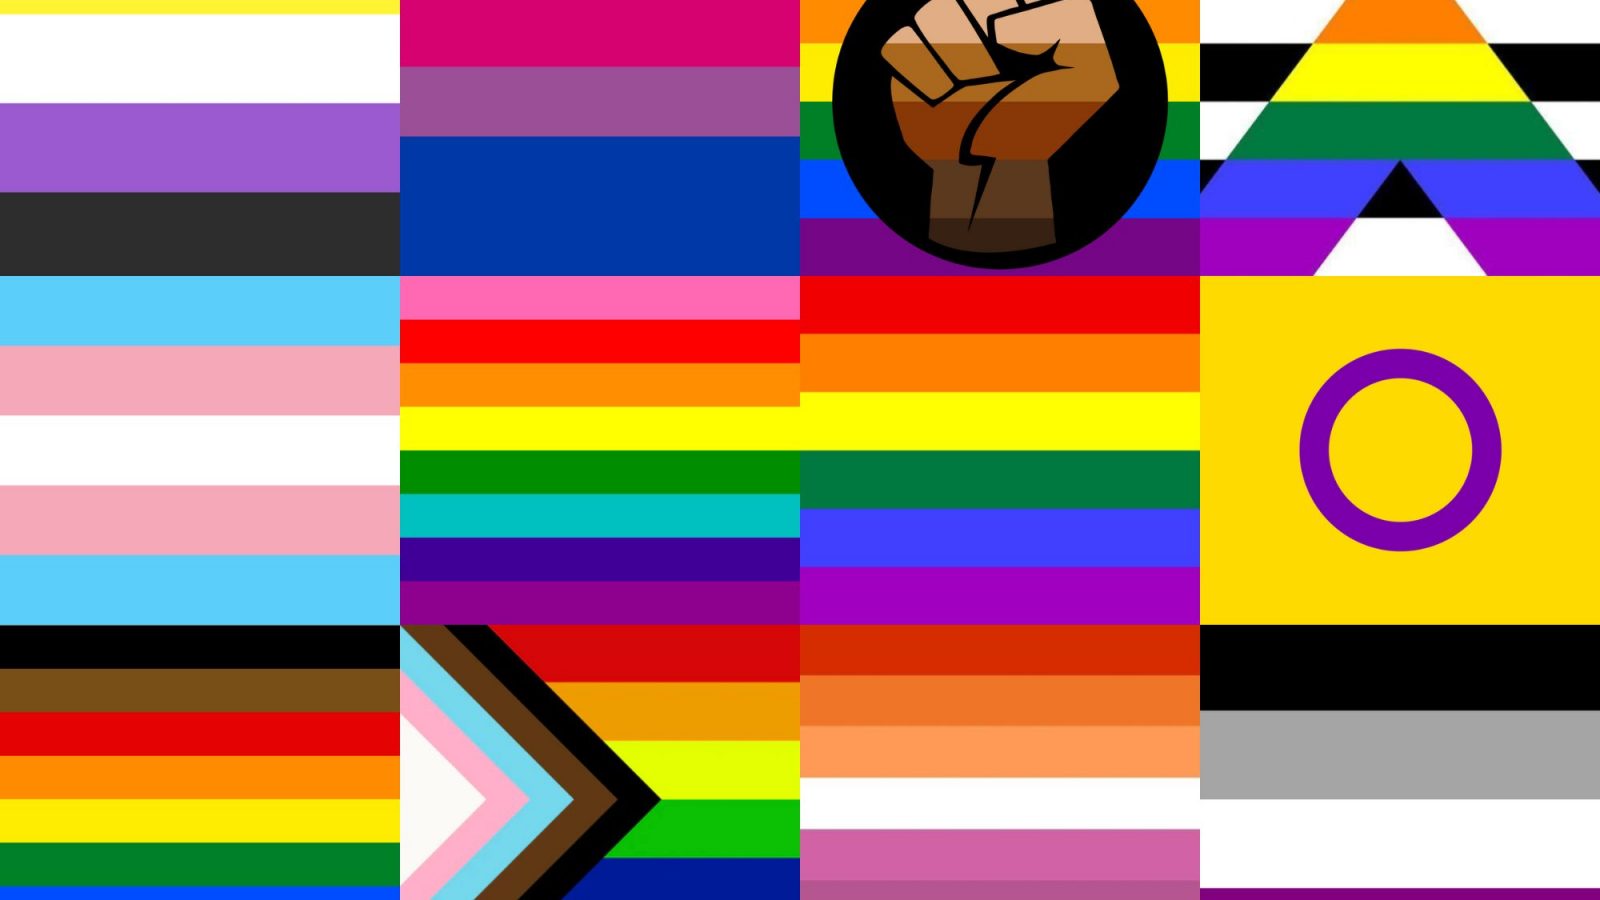 Truy cập ngay vào những hình ảnh đầy cảm hứng của các lá cờ LGBTQIA+ Flags, chúng tôi tin rằng bạn sẽ cảm thấy thật tự hào về sự đa dạng và sự phát triển về nhận thức trong xã hội ngày nay. Hãy cùng chia sẻ niềm đam mê và yêu thương tới tất cả mọi người nhé!